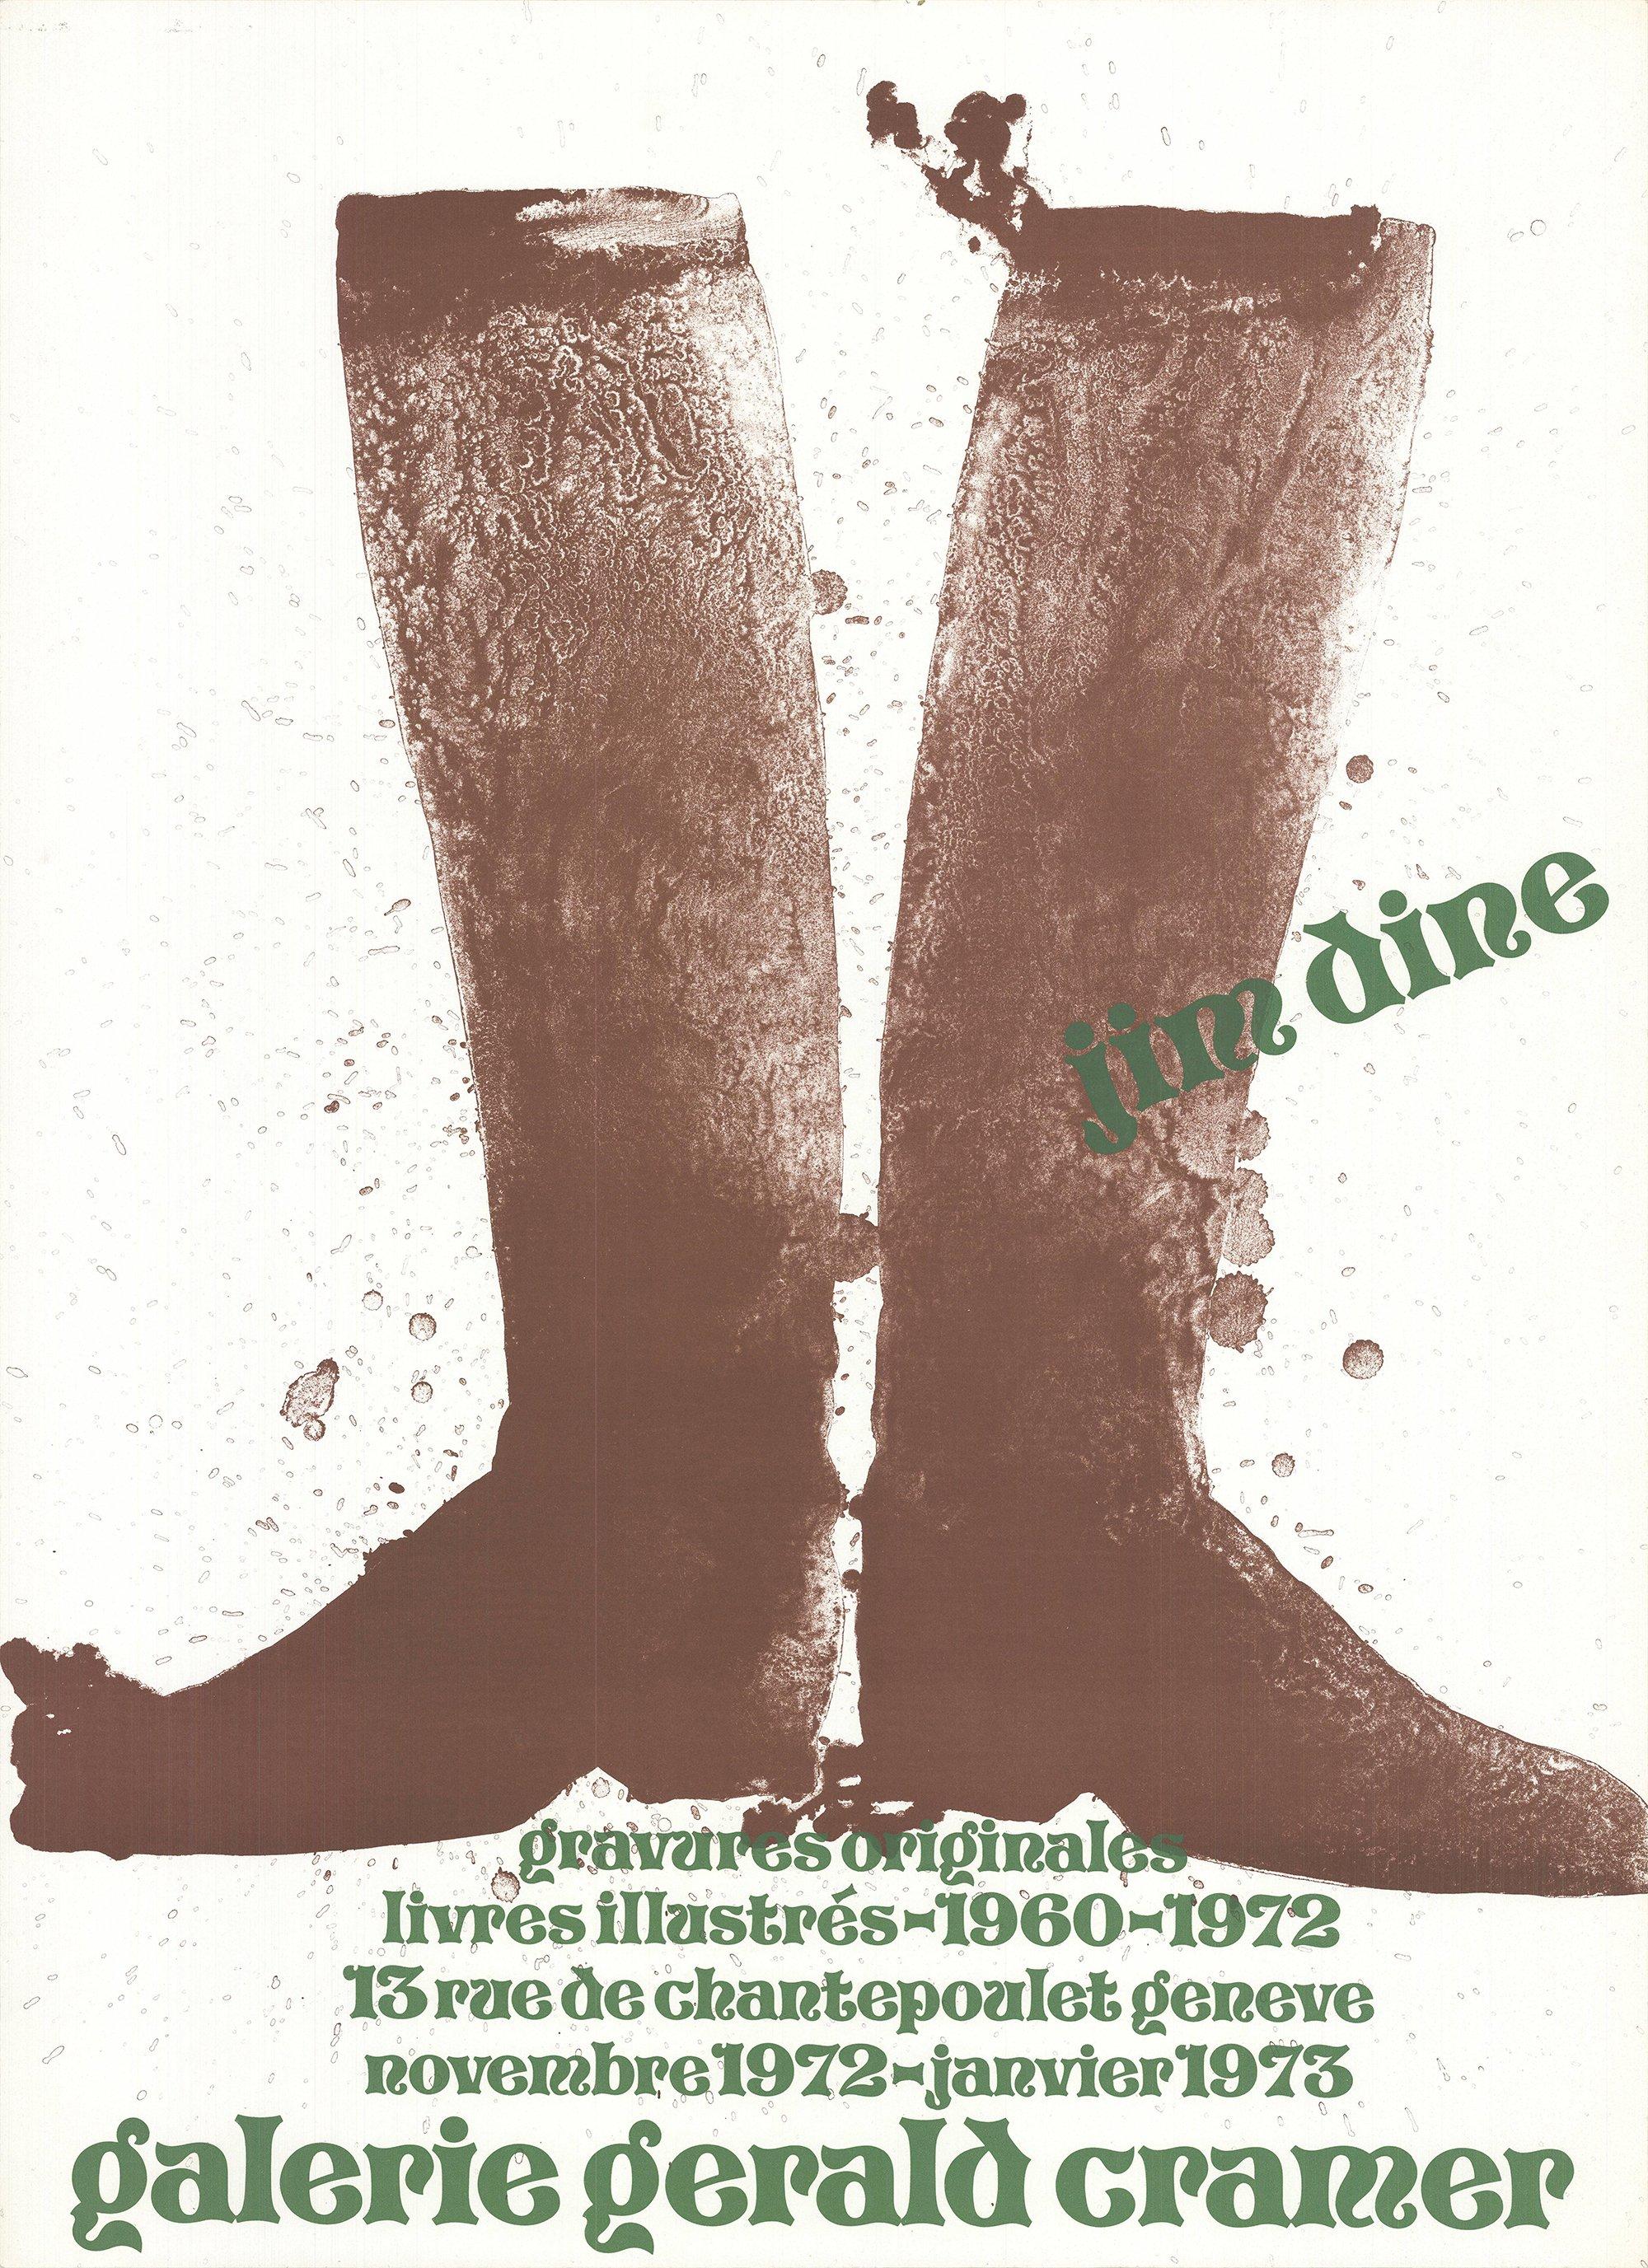 Taille du papier : 30 x 22 pouces (76,2 x 55,88 cm)
 Taille de l'image : 30 x 22 pouces ( 76.2 x 55.88 cm )

 L'affiche de Jim Dine promouvant l'exposition de gravures originales et de livres illustrés à la Galerie Gerald Cramer de novembre 1972 à